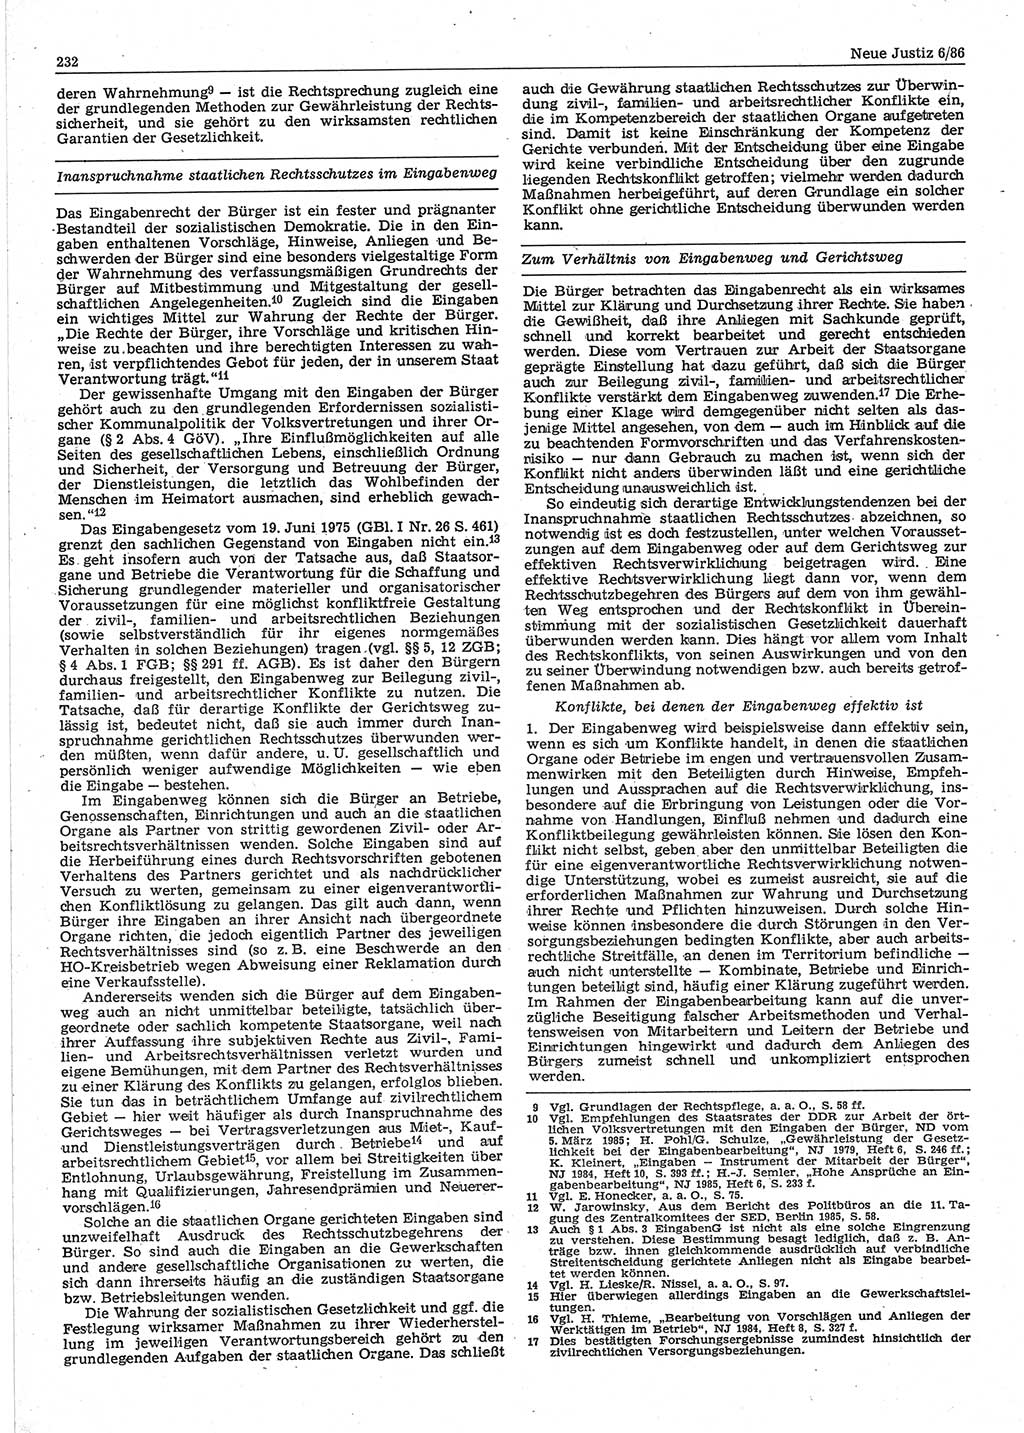 Neue Justiz (NJ), Zeitschrift für sozialistisches Recht und Gesetzlichkeit [Deutsche Demokratische Republik (DDR)], 40. Jahrgang 1986, Seite 232 (NJ DDR 1986, S. 232)